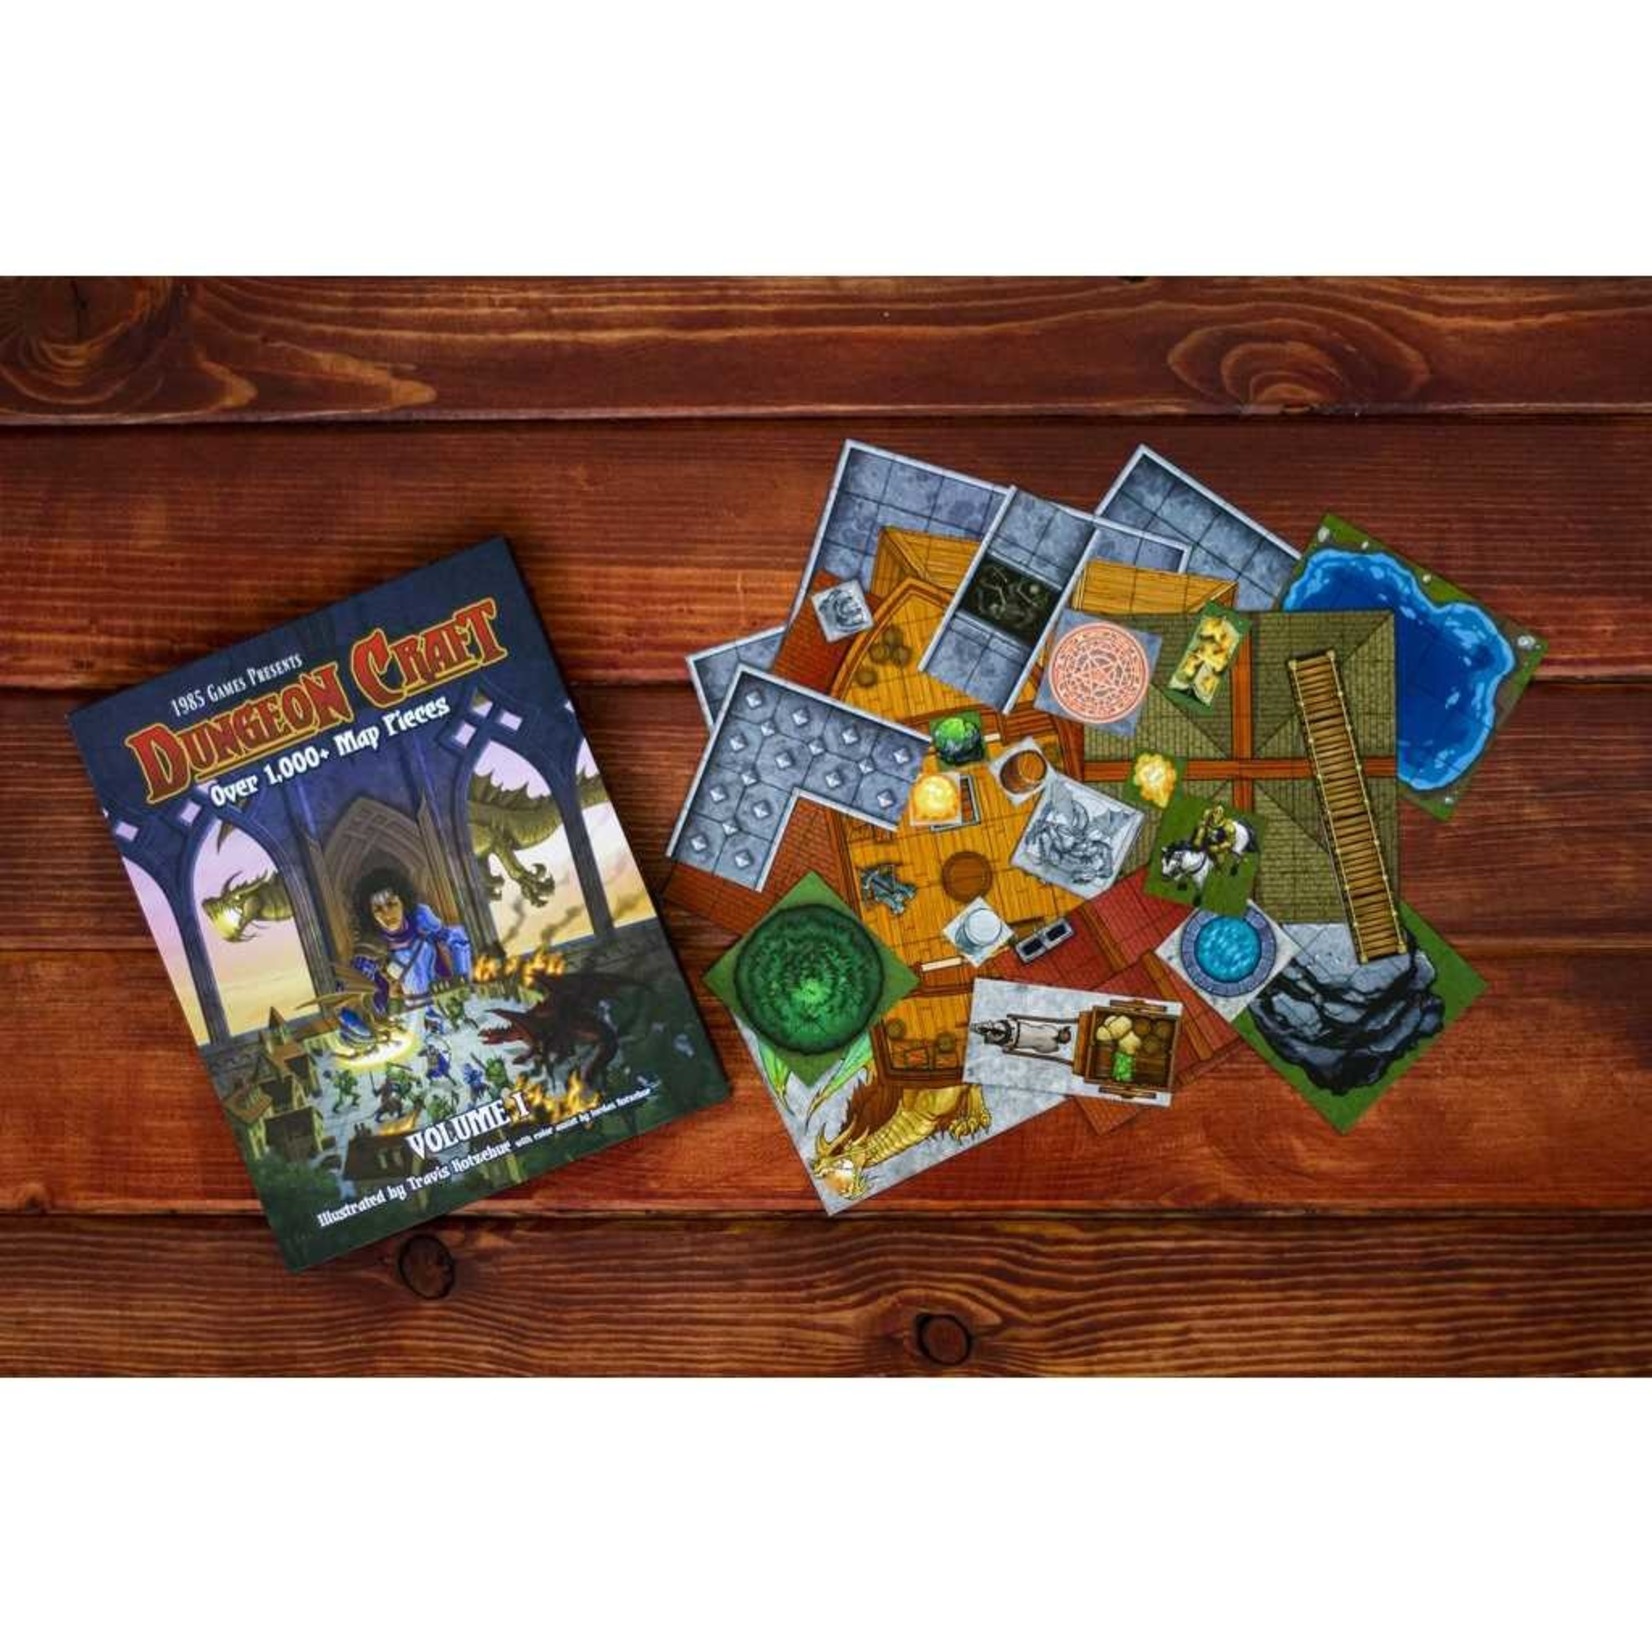 1985 Games Dungeon Craft Vol. 1